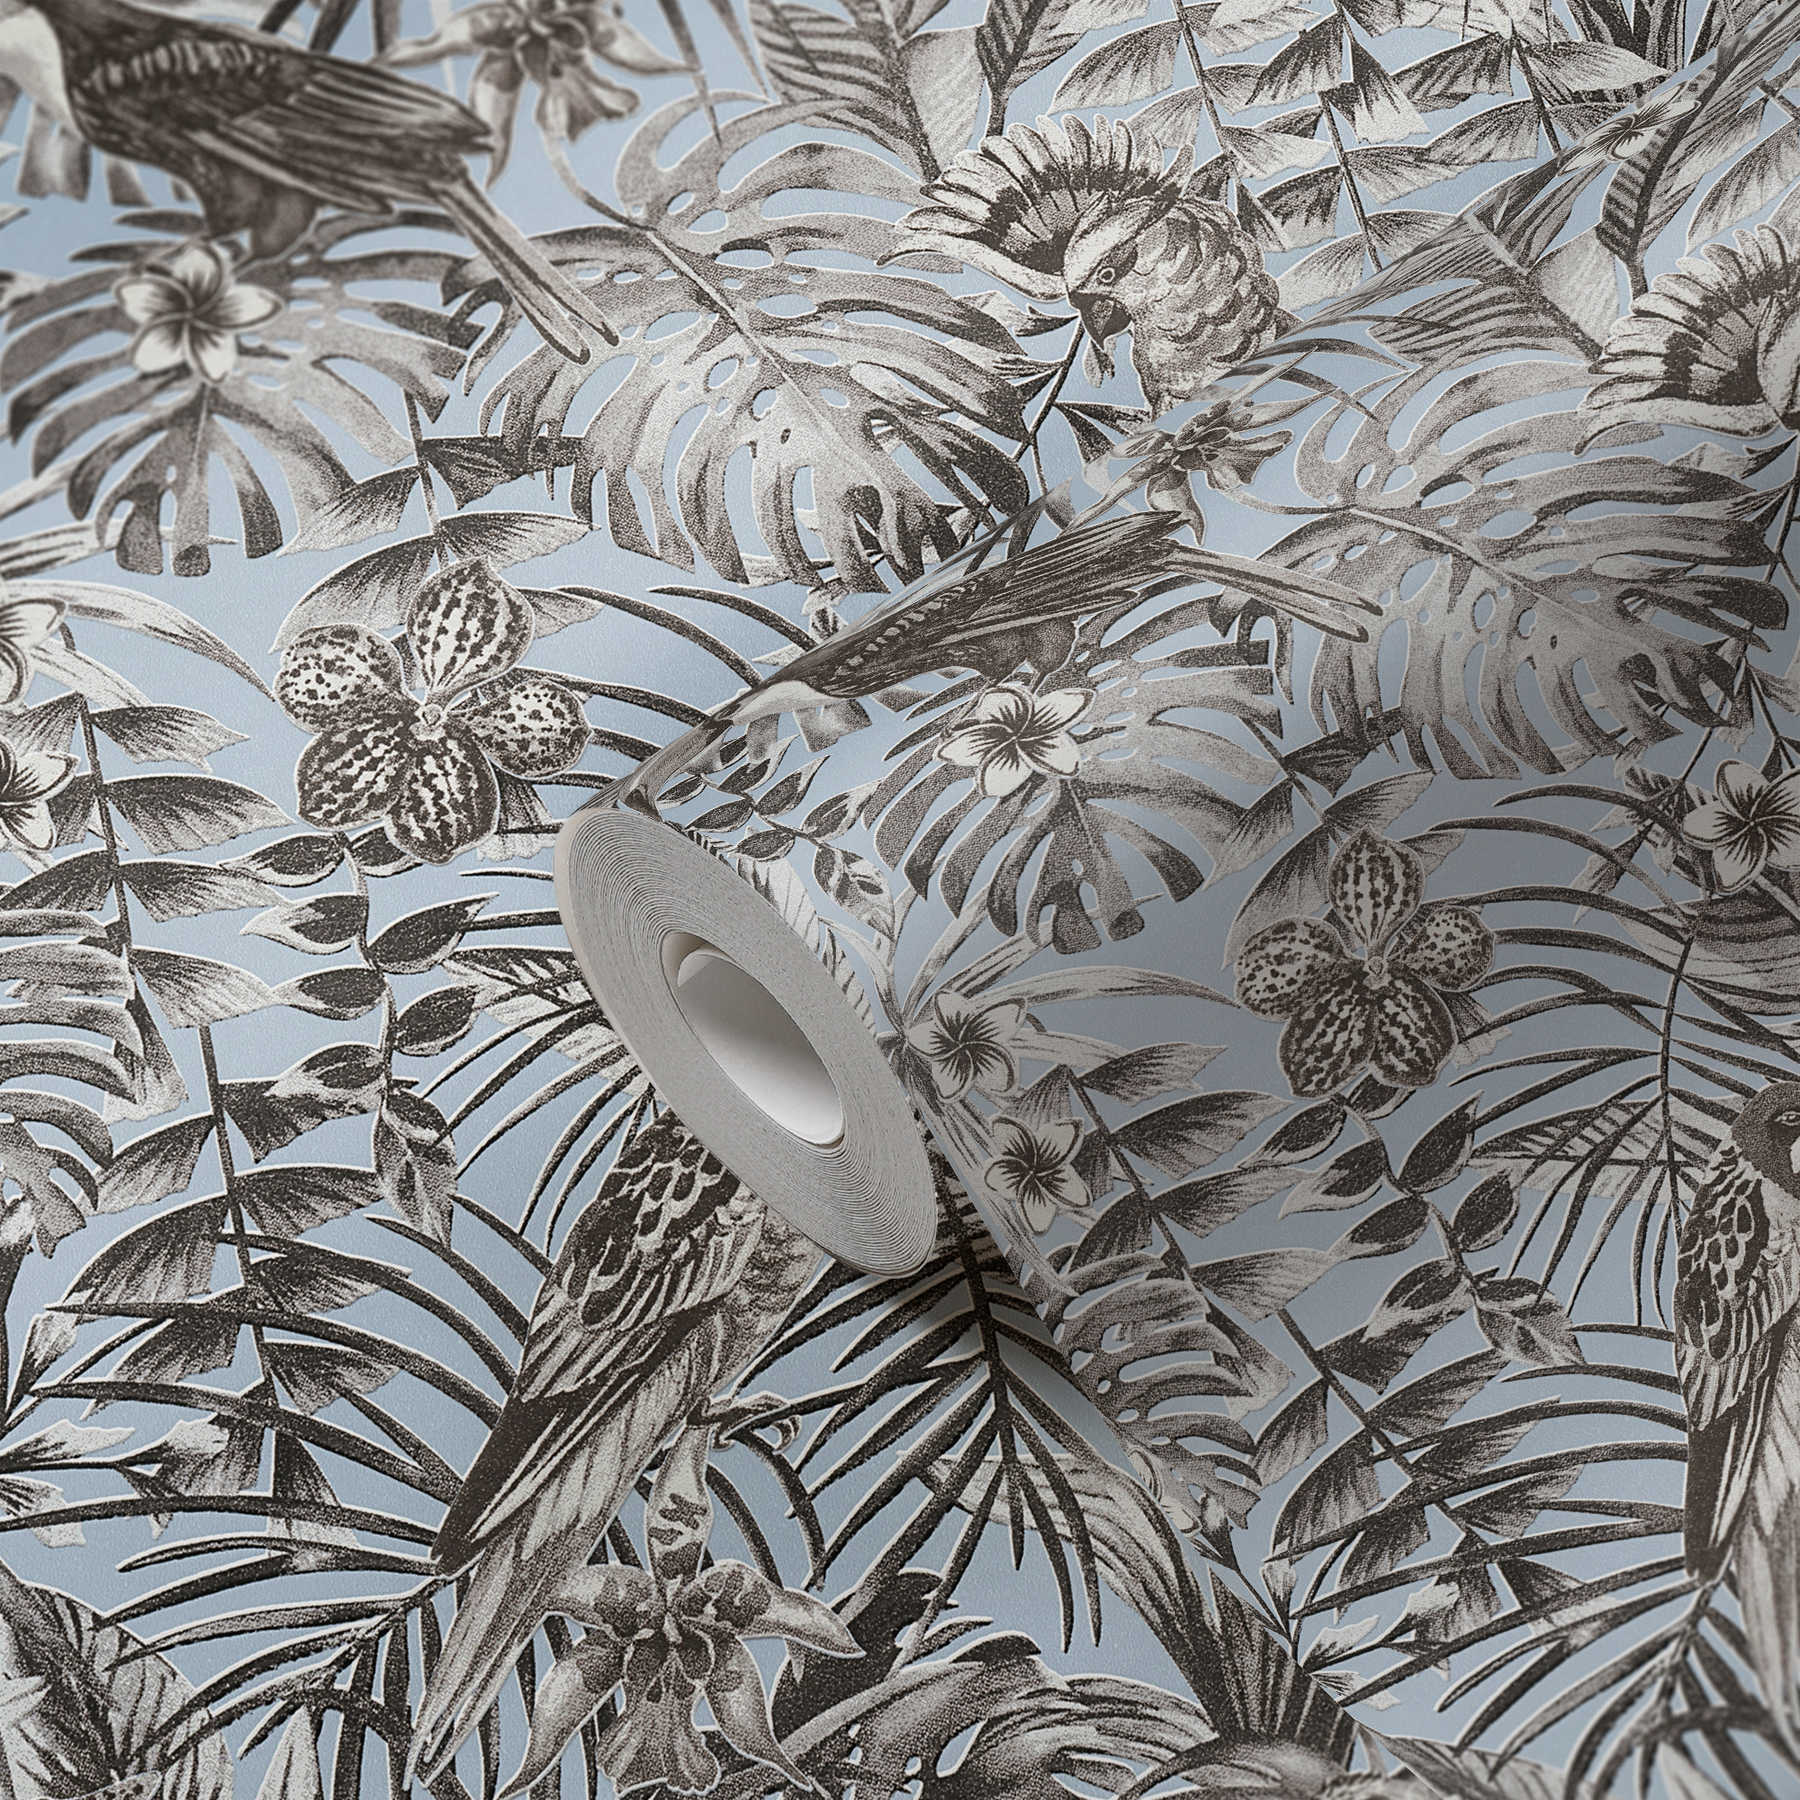             Papier peint exotique oiseaux tropicaux, fleurs et feuilles - gris, bleu, blanc
        